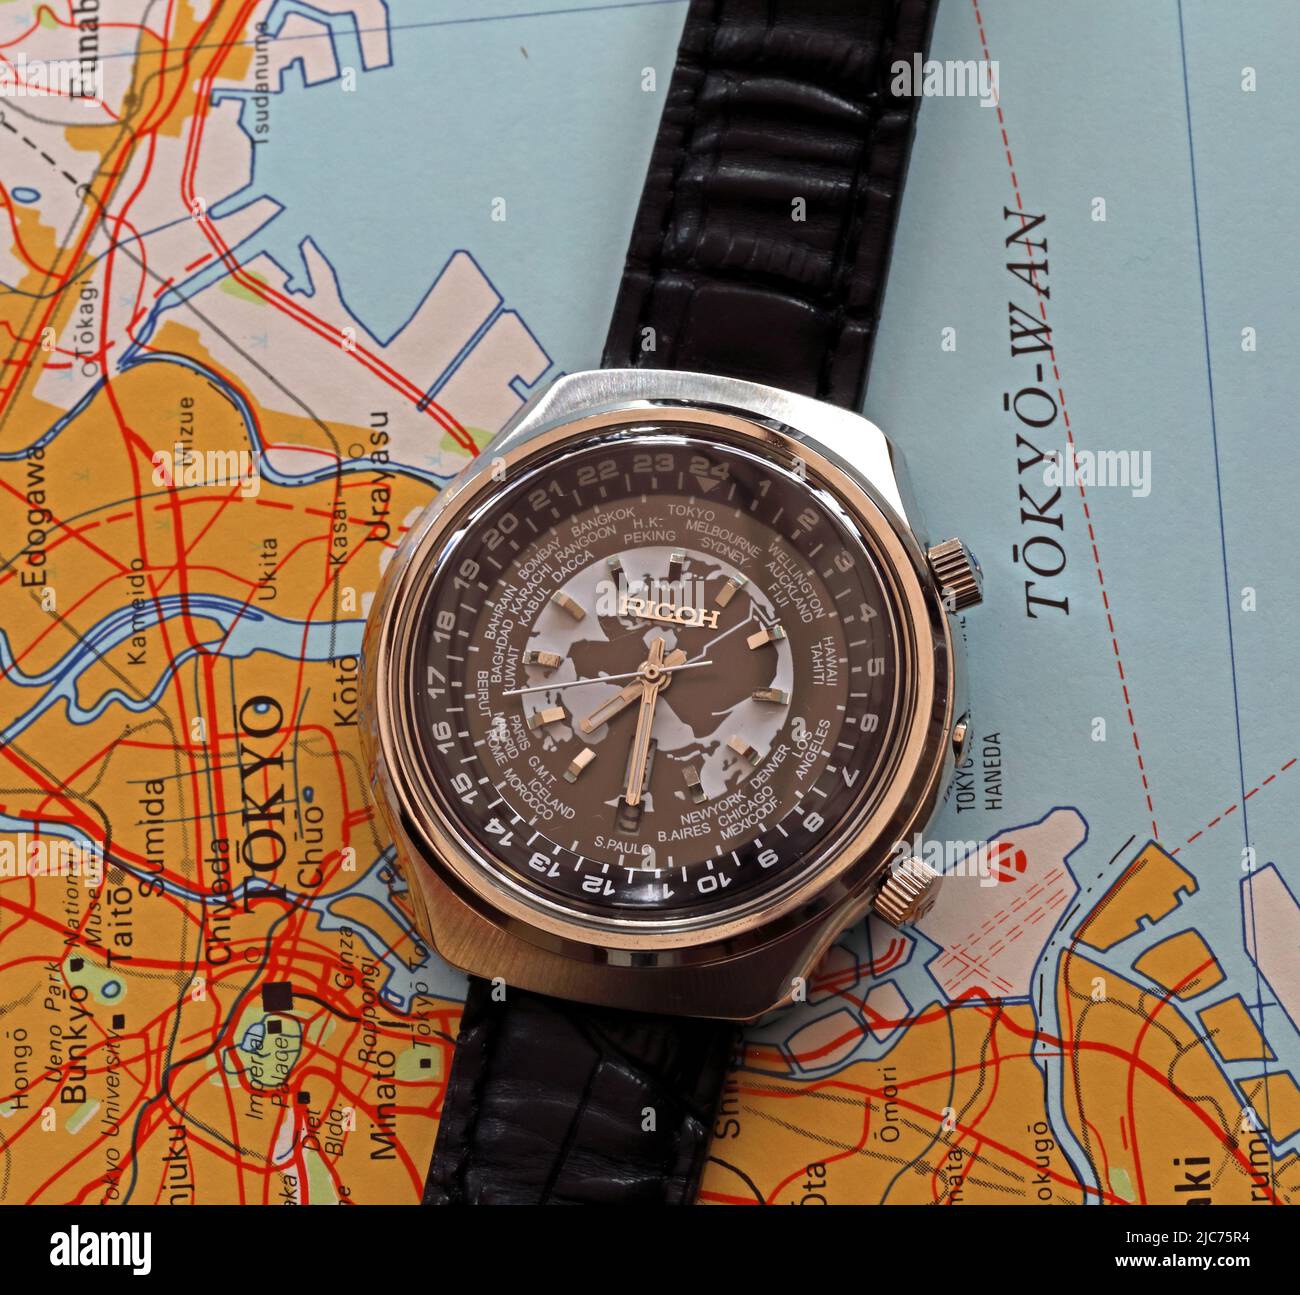 Ricoh worldtime Watch, automatique, fabriqué au Japon, 1960s et 1970s, Ota, Tokyo, Japon Banque D'Images